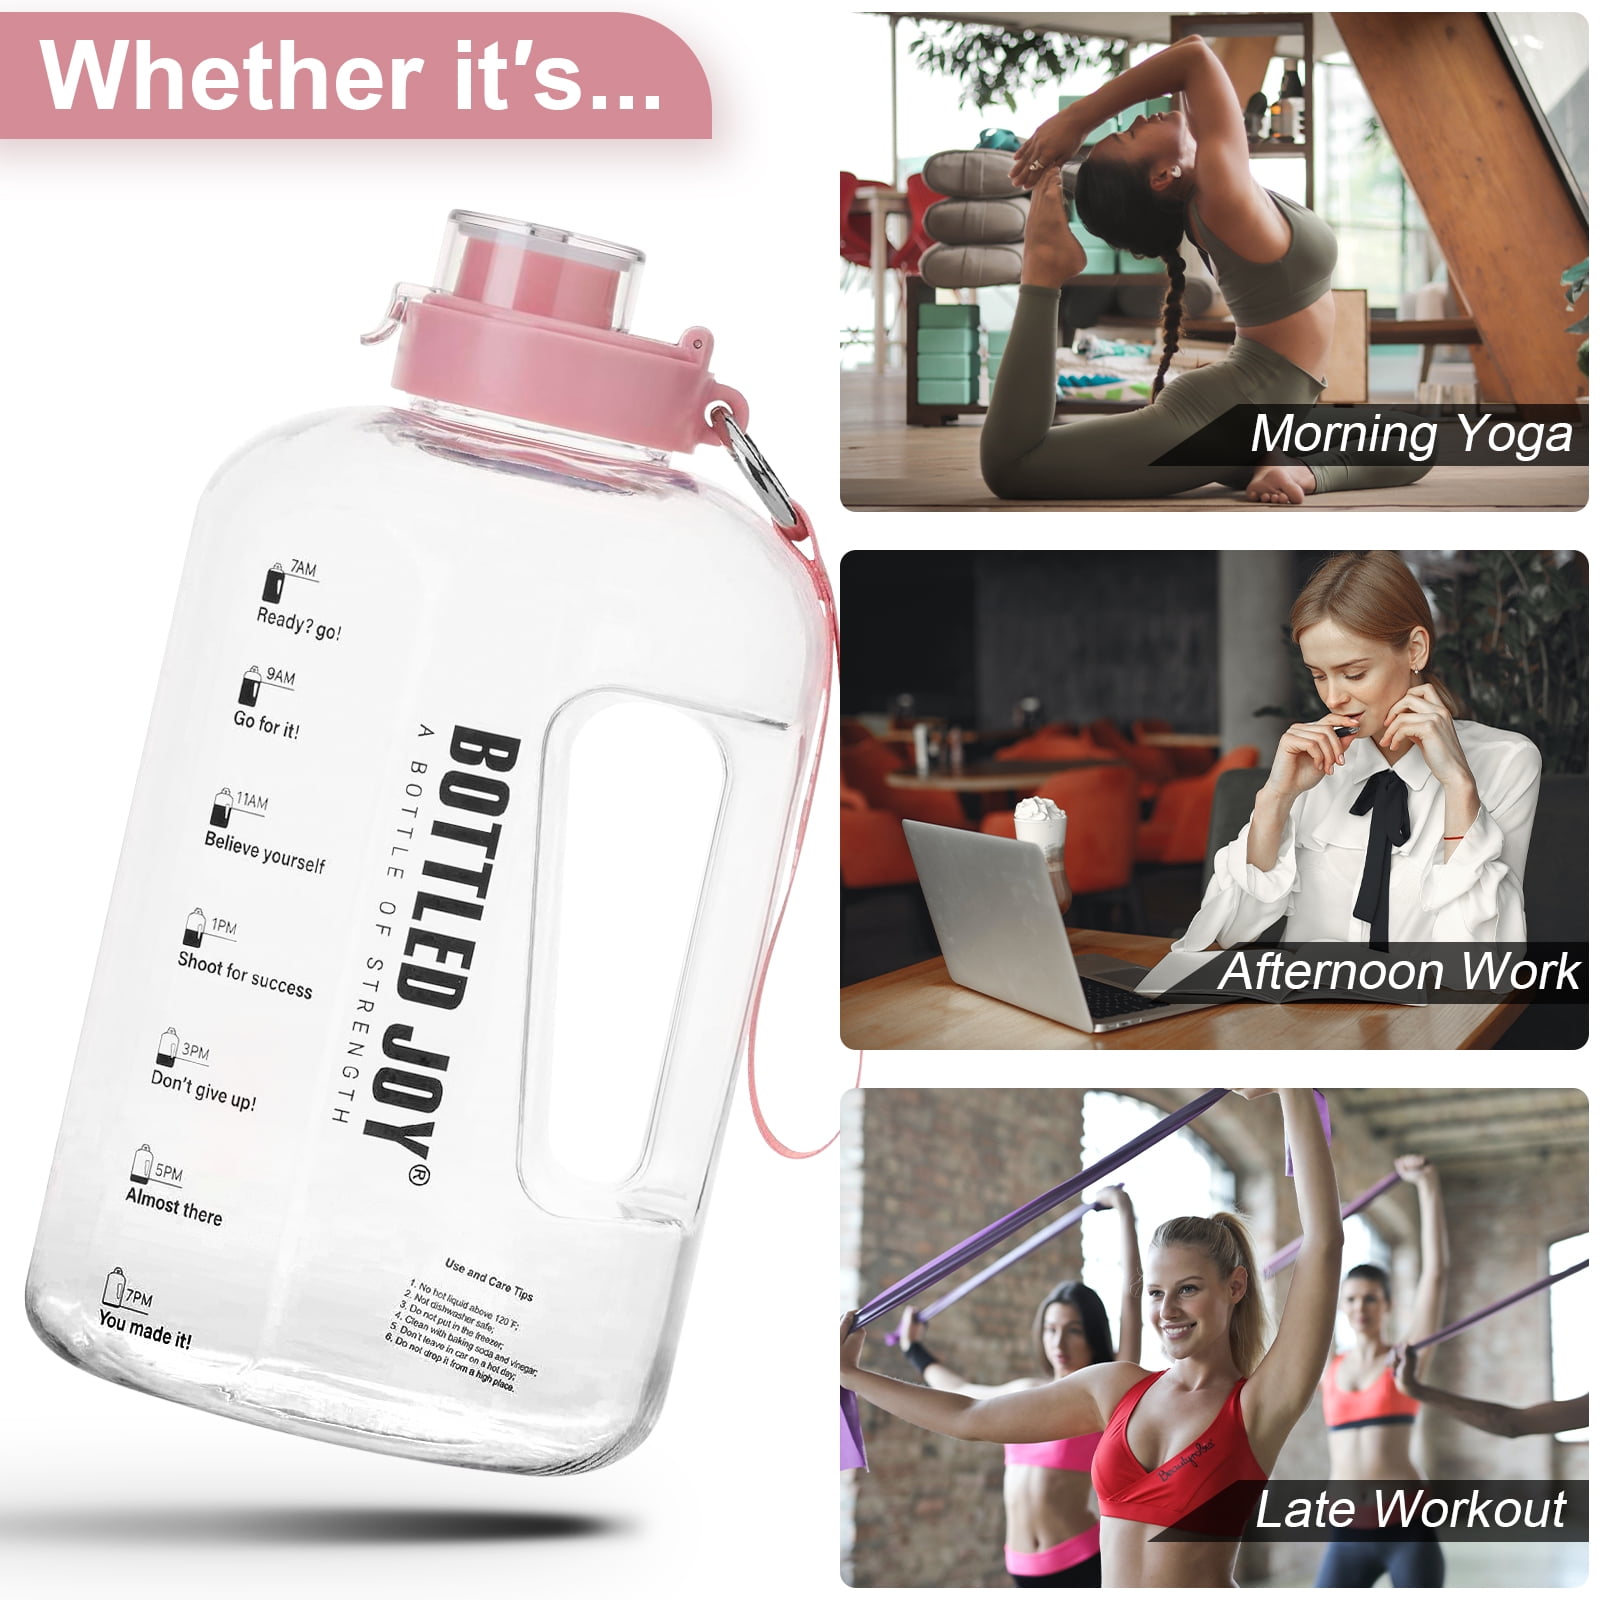 Bottled Joy 1 Gallon Water Bottle Drink Jug Motivational Time Slot Carry  Strap